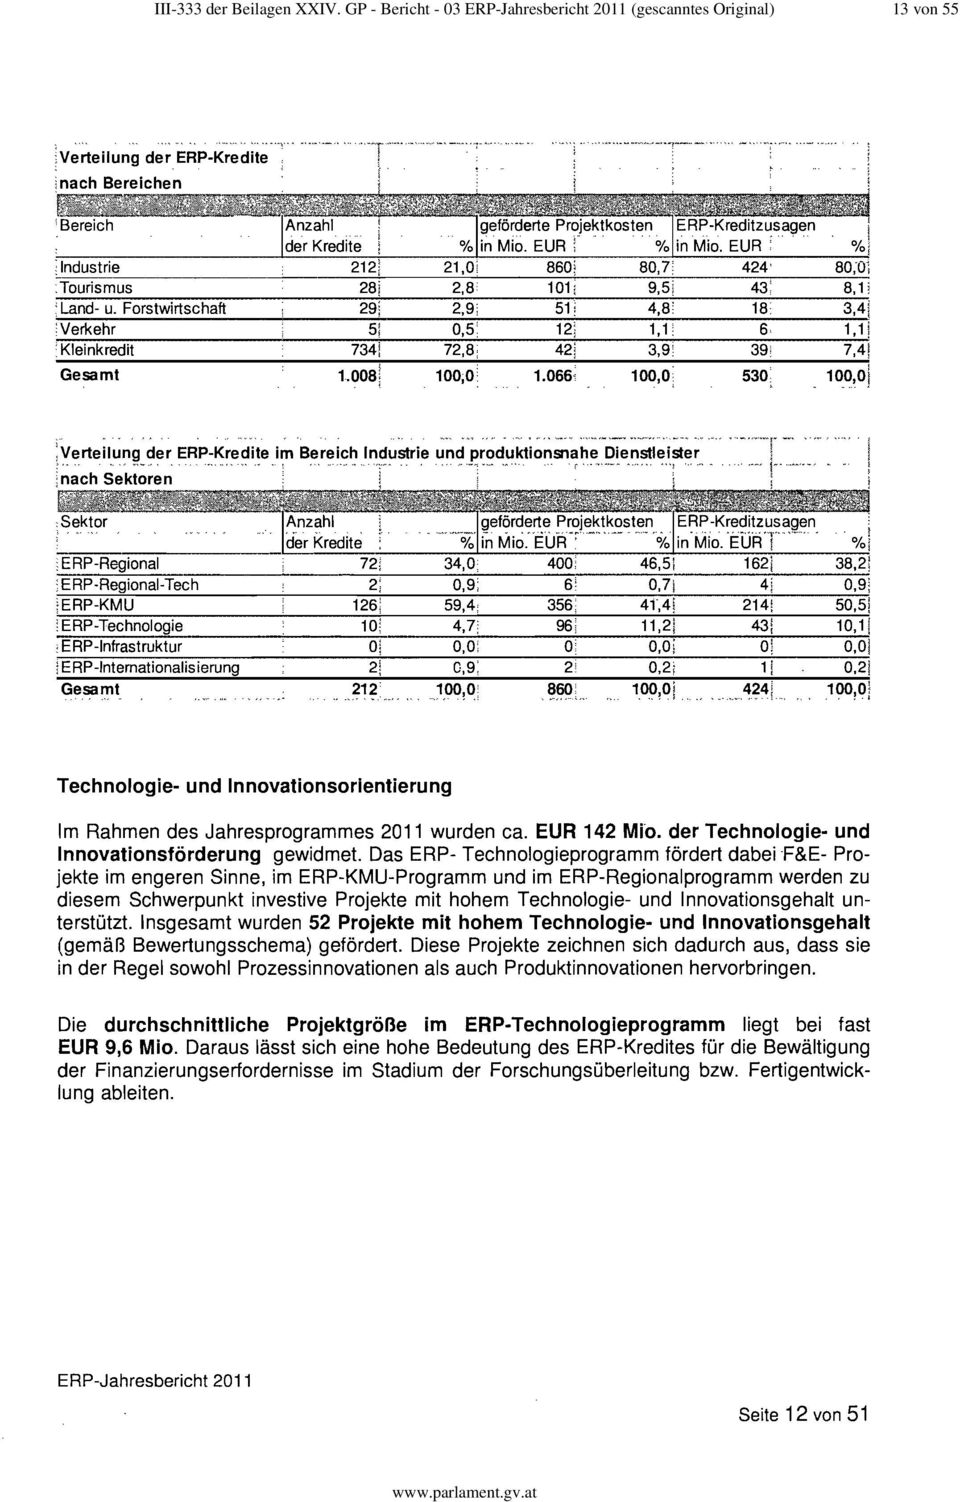 ERP-Jahresbericht 2011